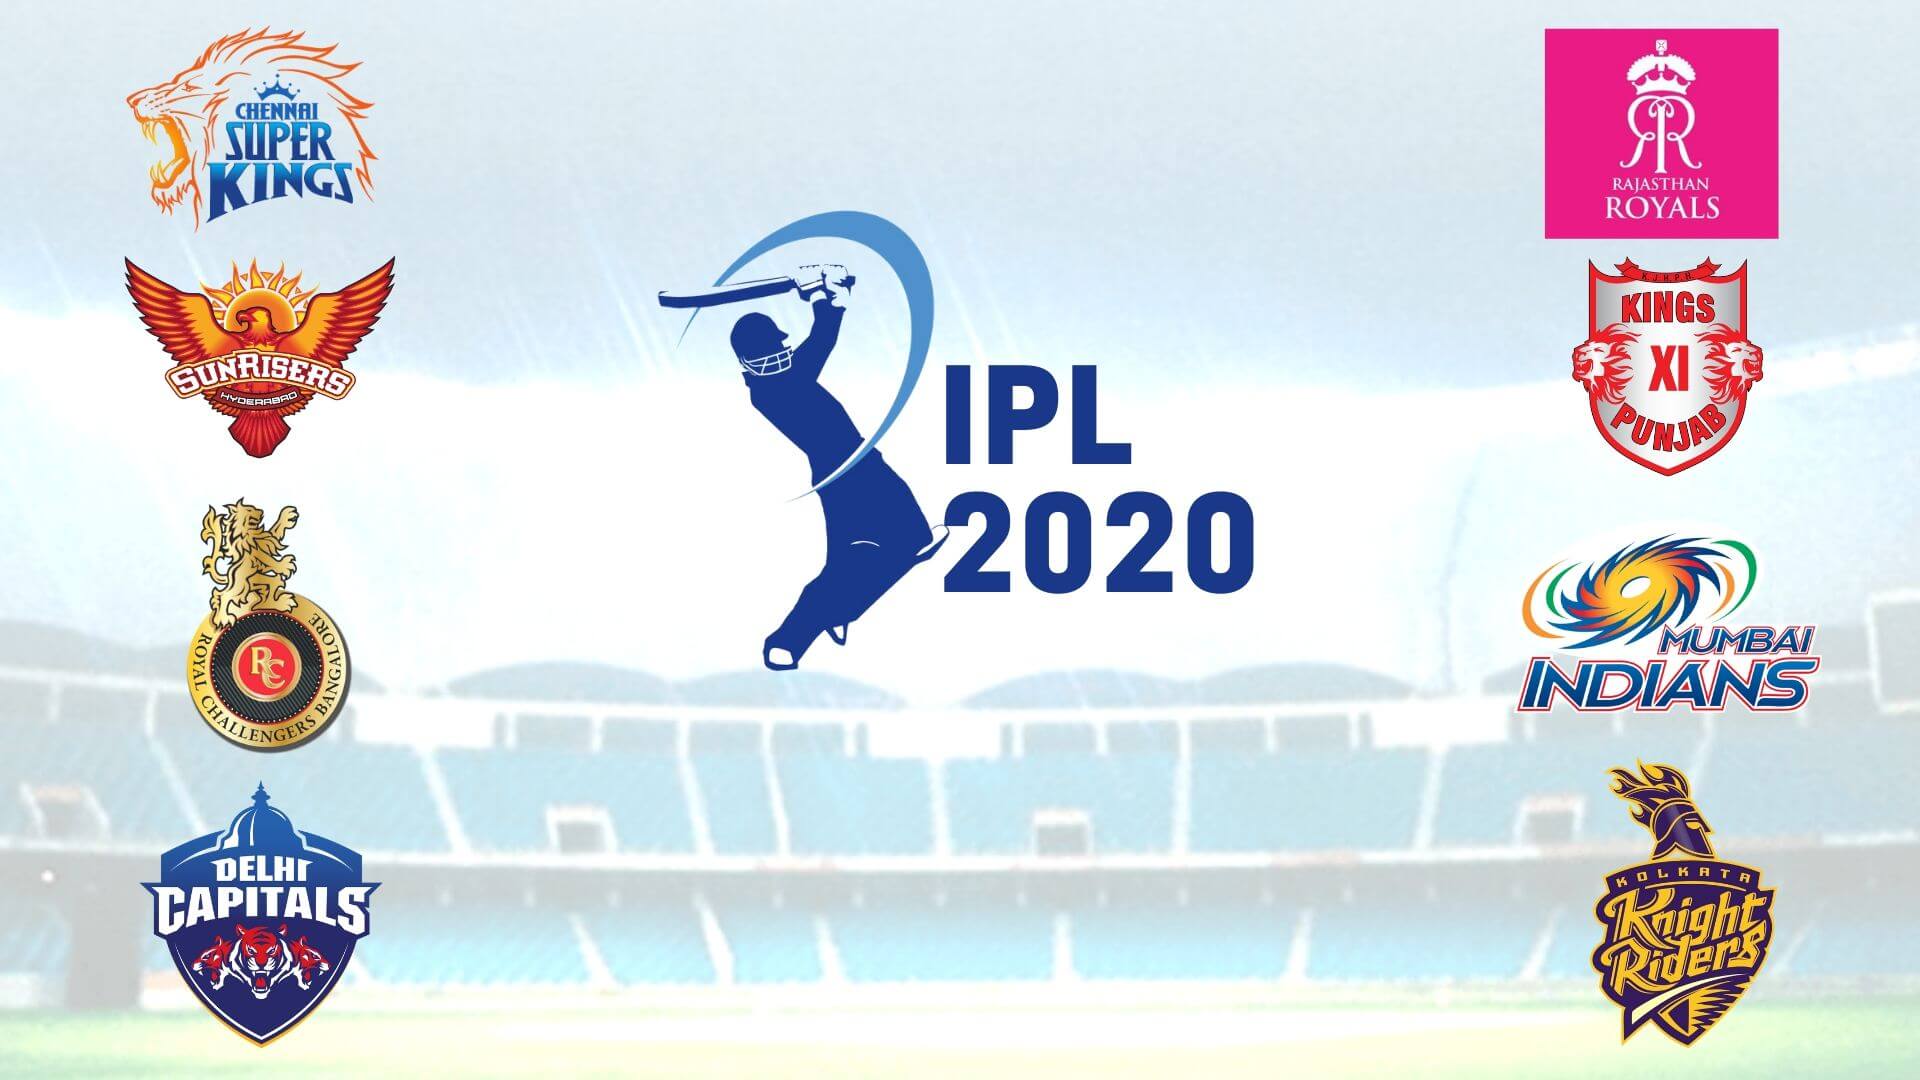 2020 IPL Teams